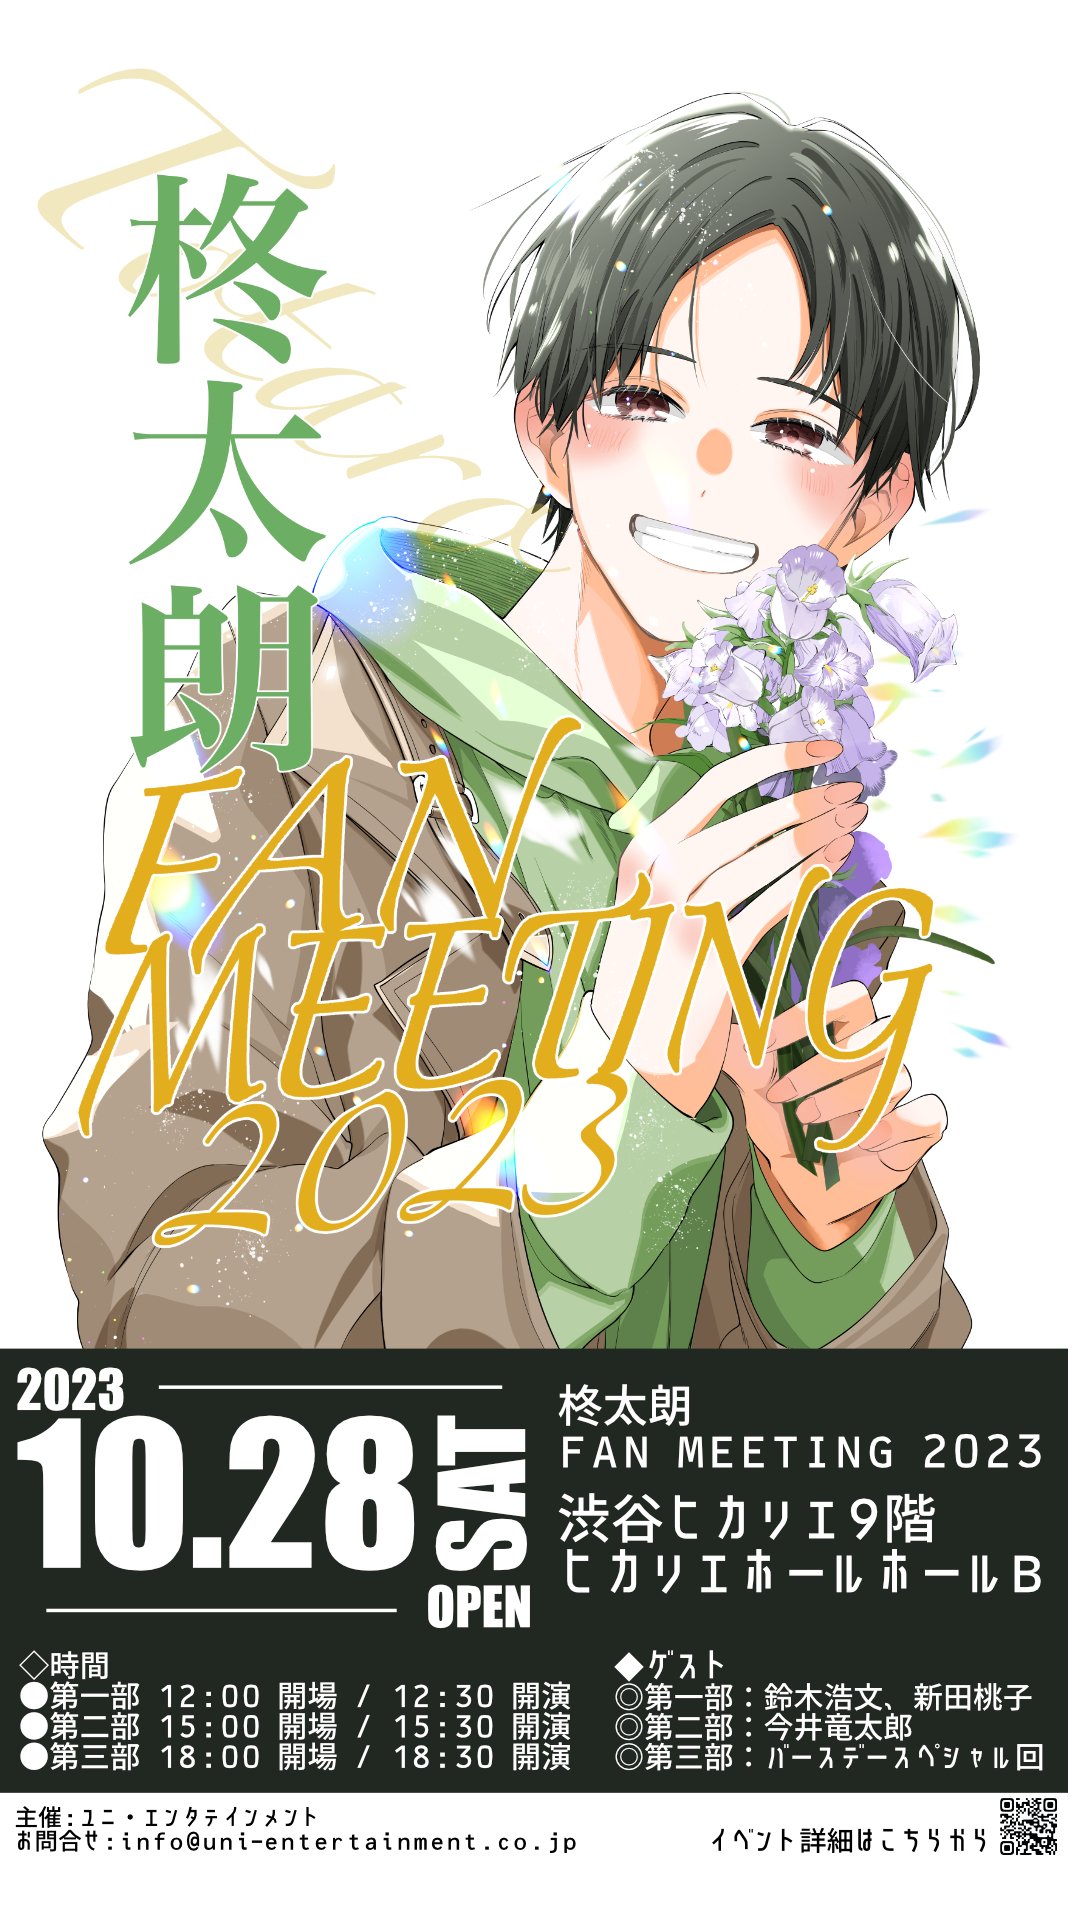 柊太朗 FAN MEETING 2023